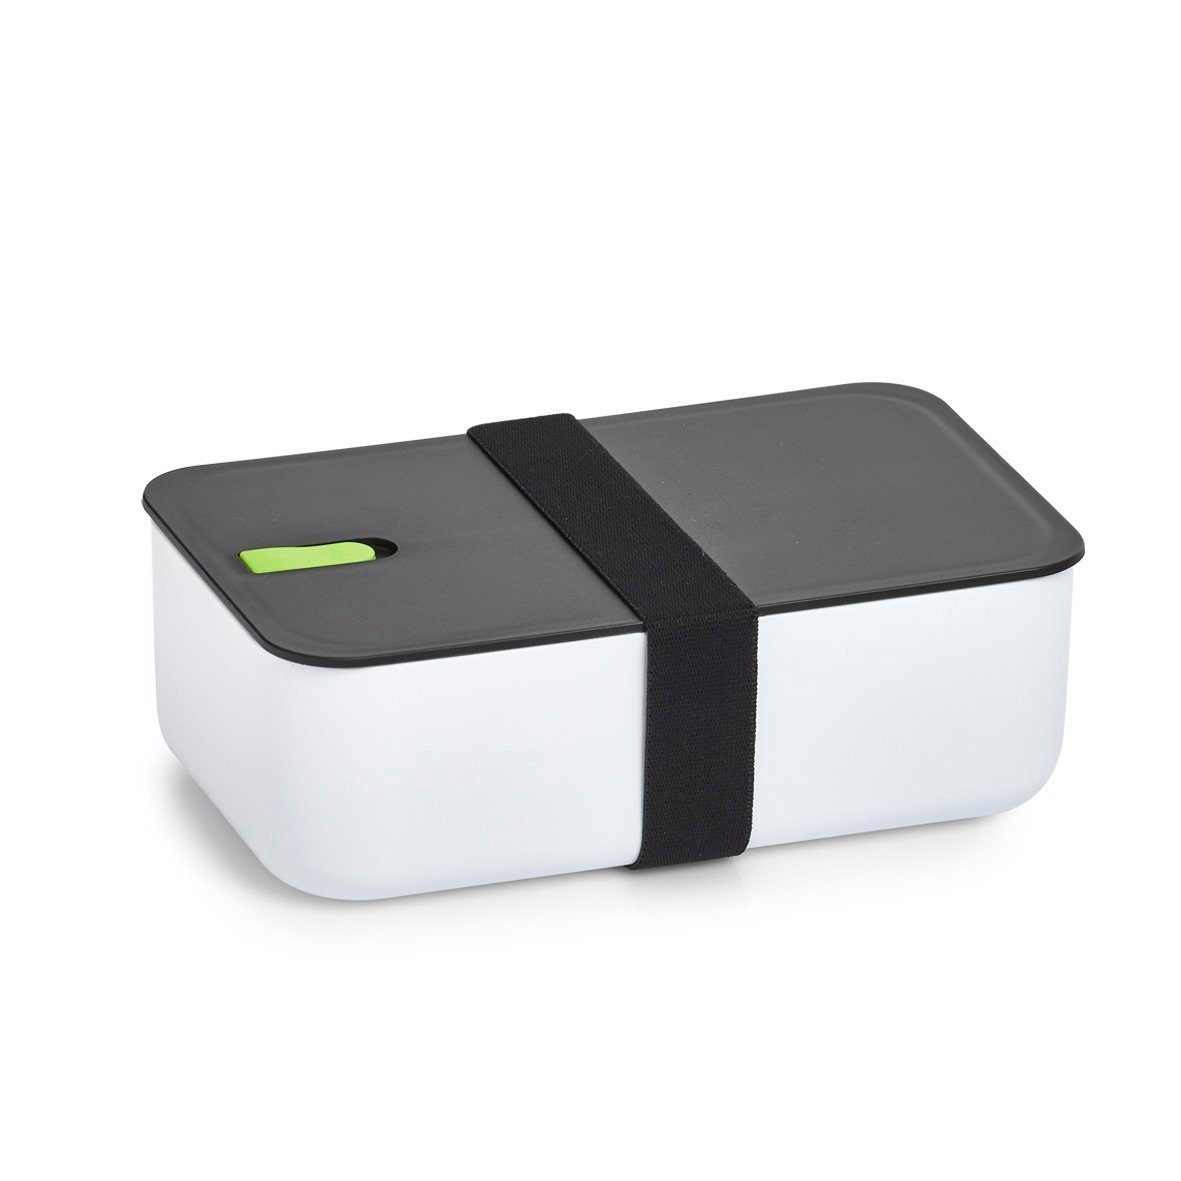 Zeller Present Küchenorganizer-Set Lunch Box, Kunststoff,  weiß/schwarz/grün, 750 ml, 19 x 12 x 6,5 cm